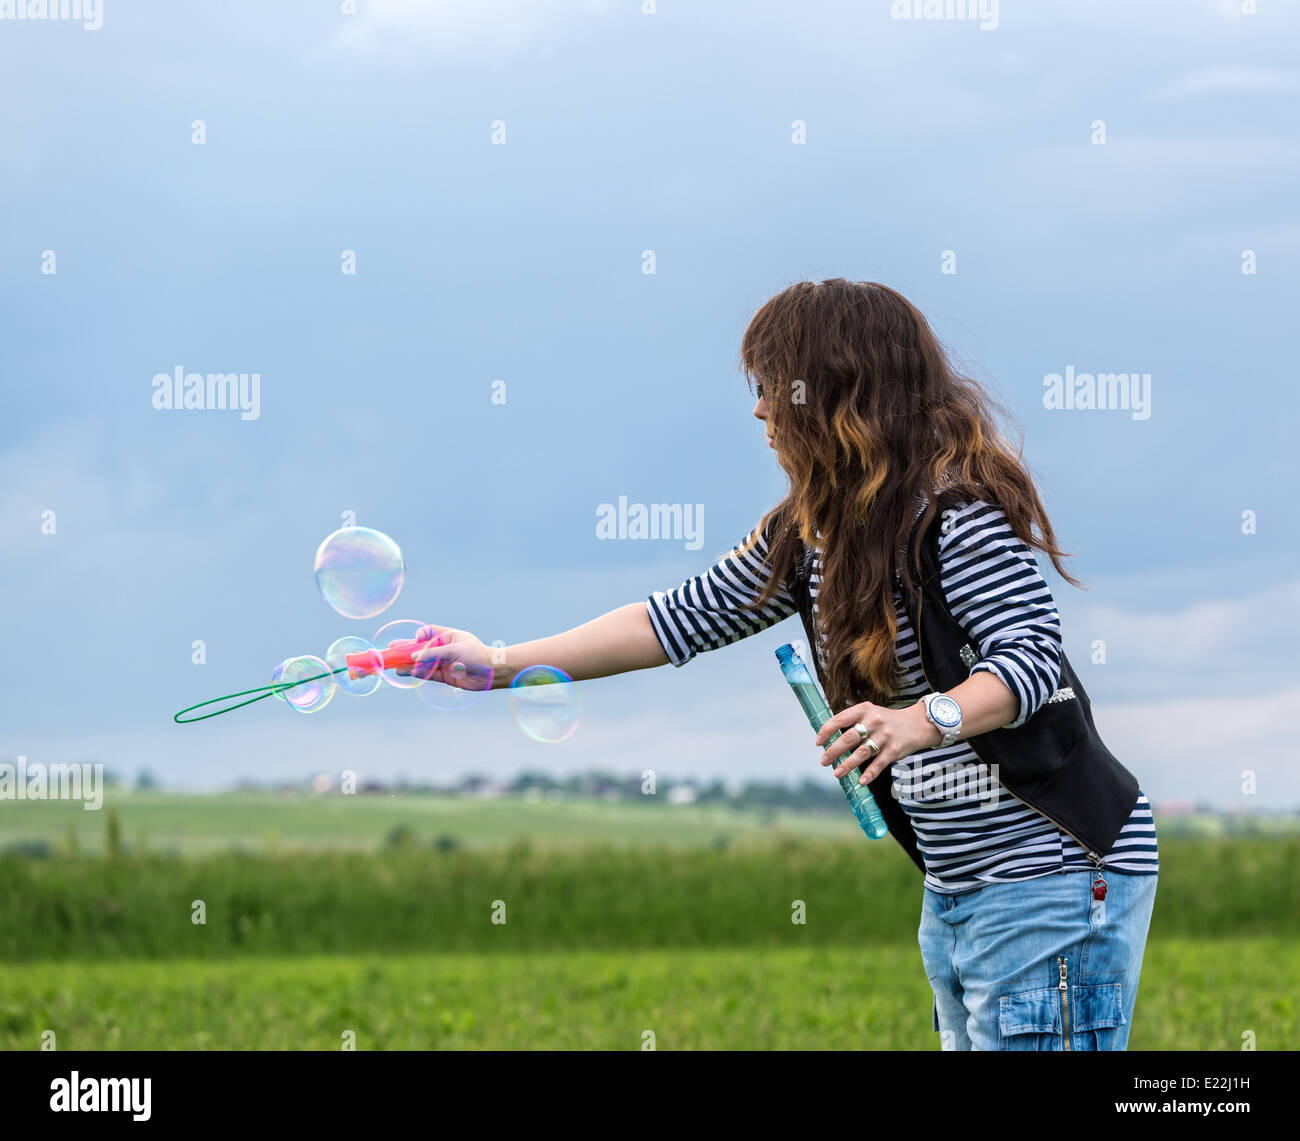 Schöne junge Frau machen Blowing Bubbles auf dem grünen Rasen Stockfoto